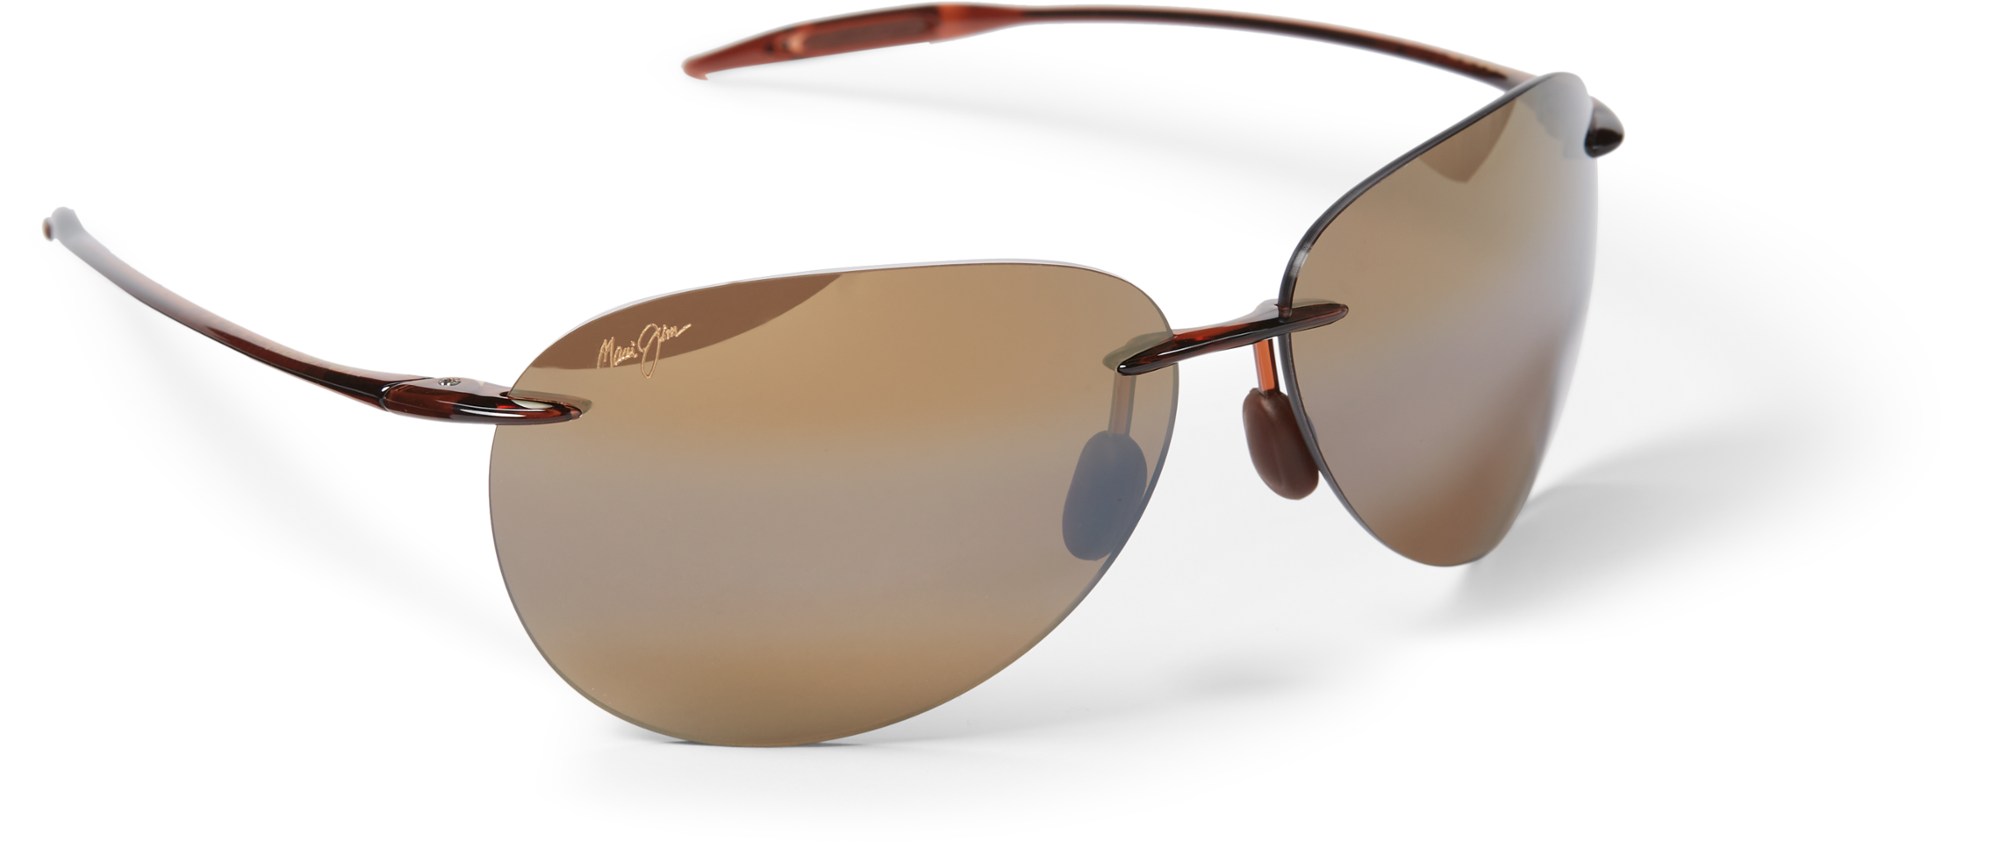 Поляризованные солнцезащитные очки Sugar Beach Maui Jim, коричневый sugar marina resort – nautical – kata beach